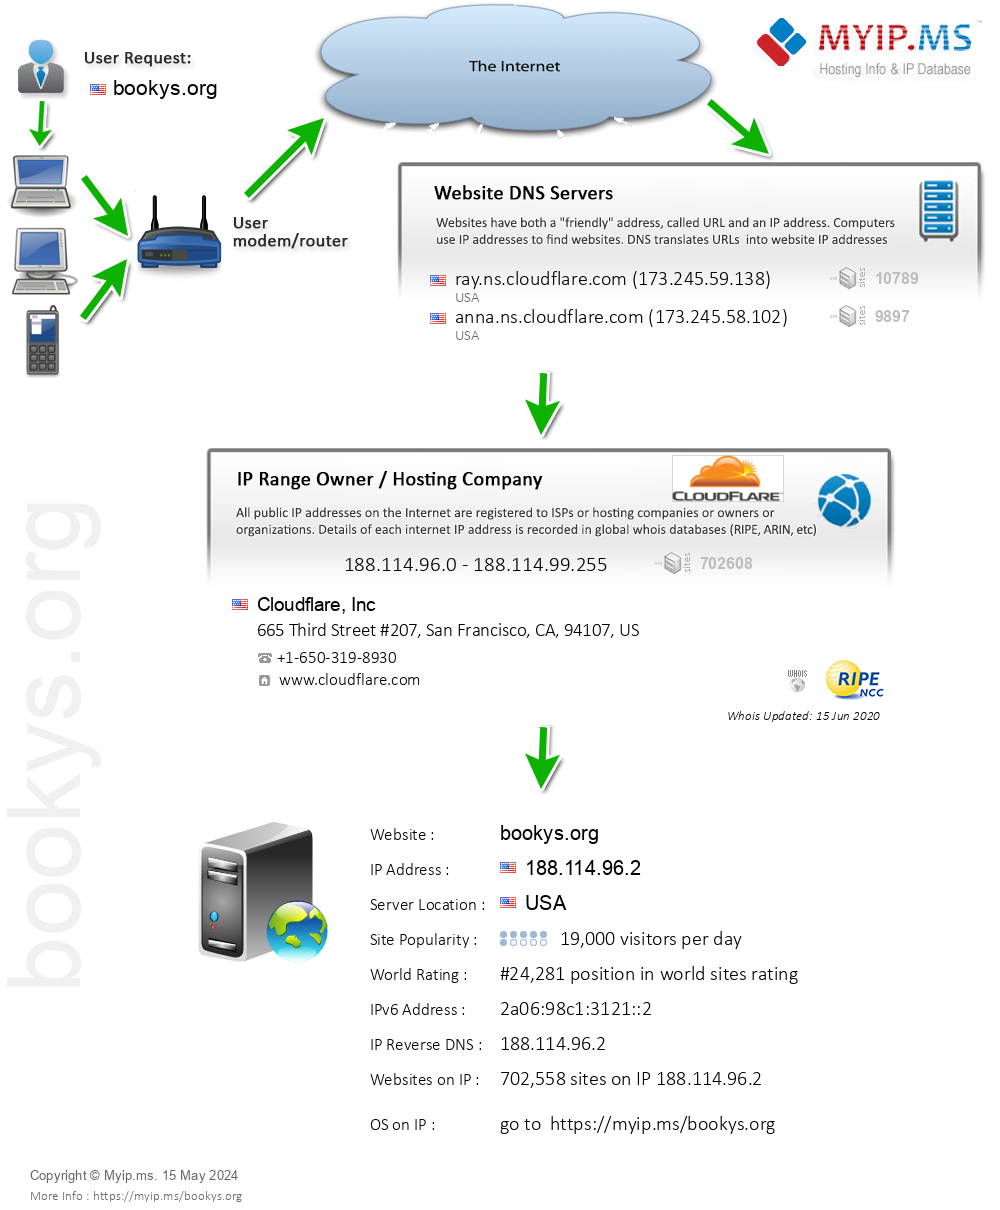 Bookys.org - Website Hosting Visual IP Diagram